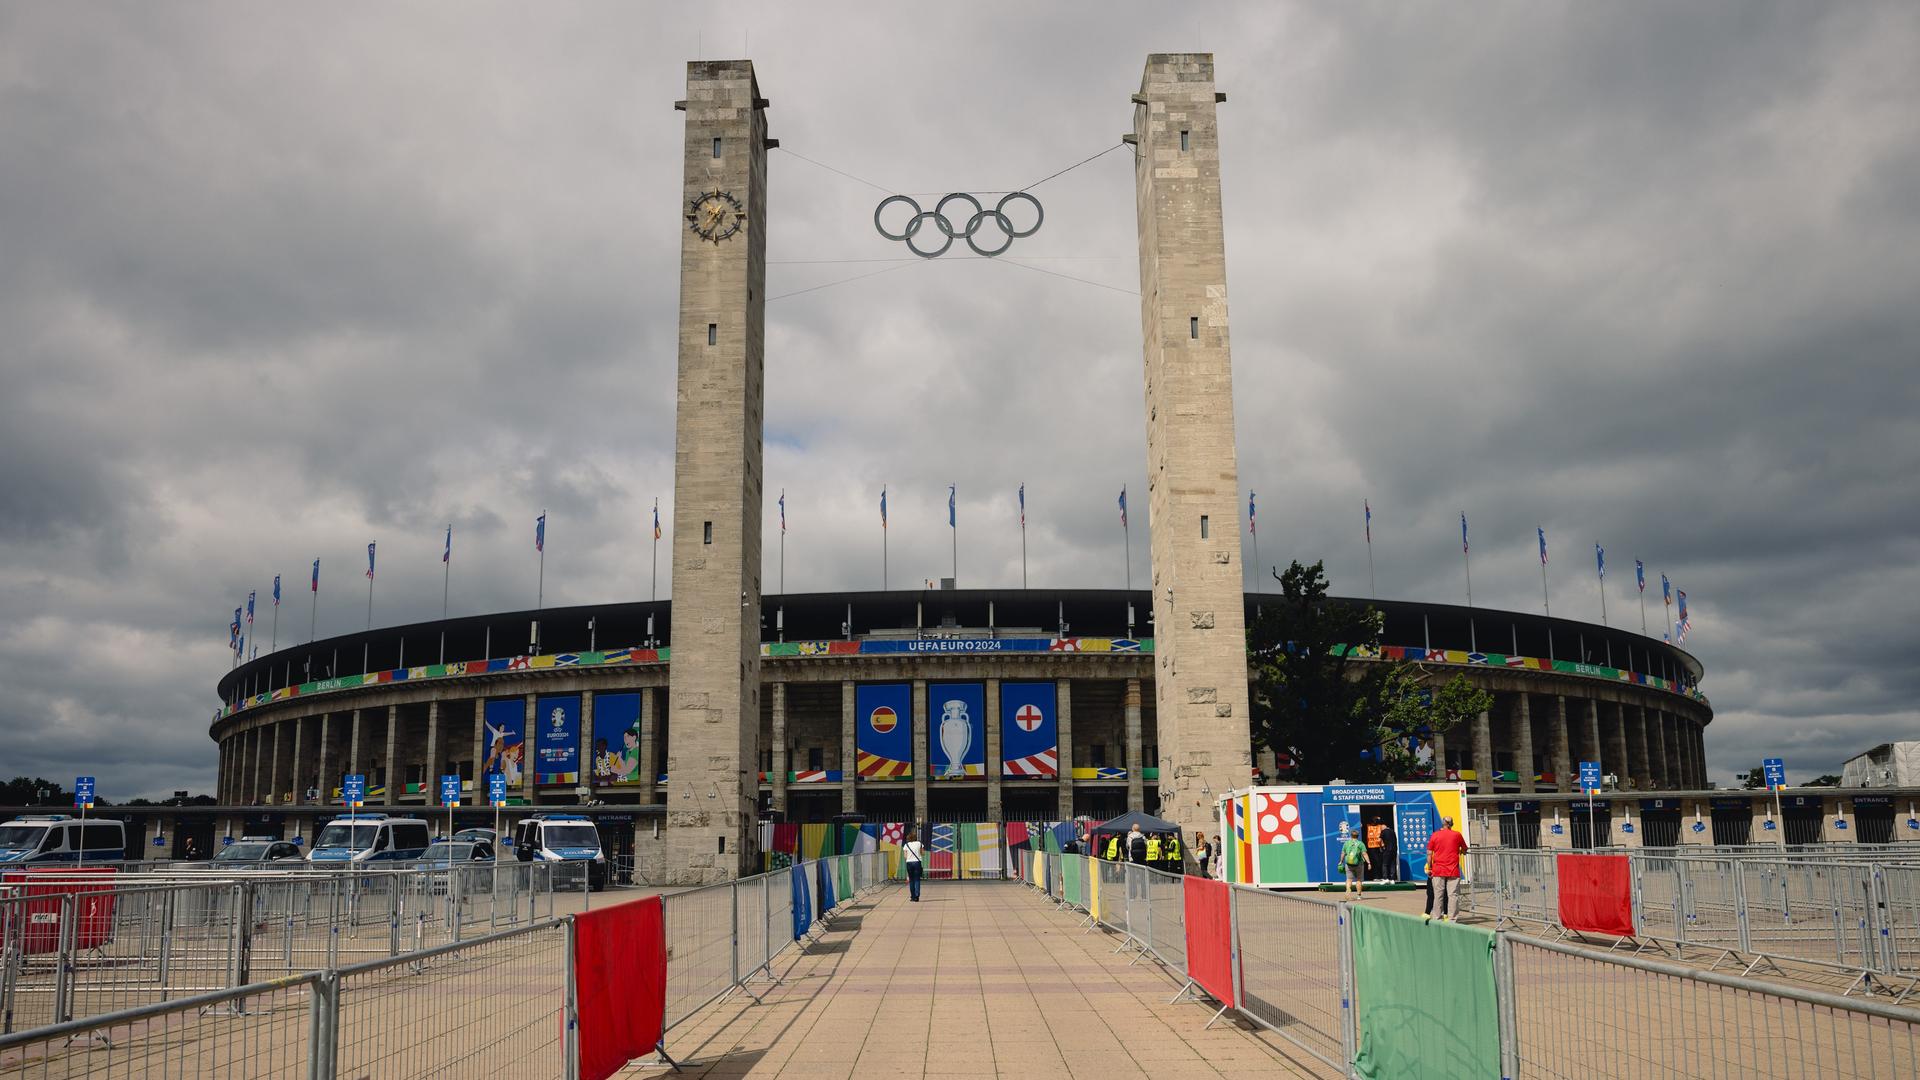 Das Olympiastadion in Berlin von Außen vor grau-bewölktem Himmel.